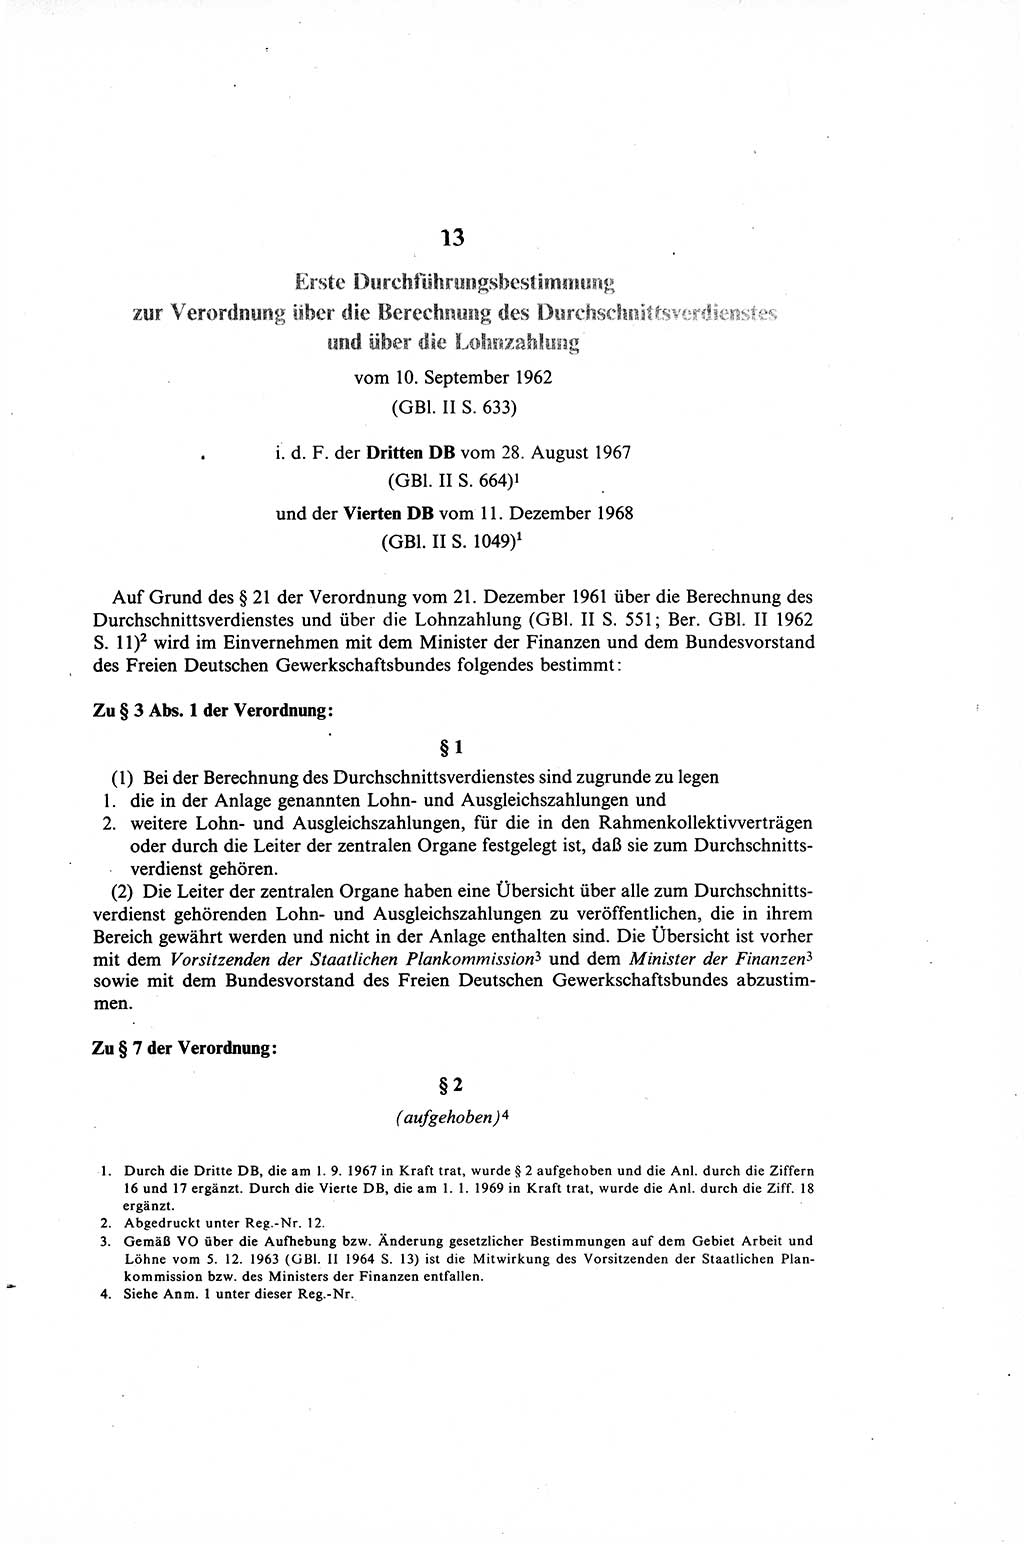 Gesetzbuch der Arbeit (GBA) und andere ausgewählte rechtliche Bestimmungen [Deutsche Demokratische Republik (DDR)] 1968, Seite 217 (GBA DDR 1968, S. 217)